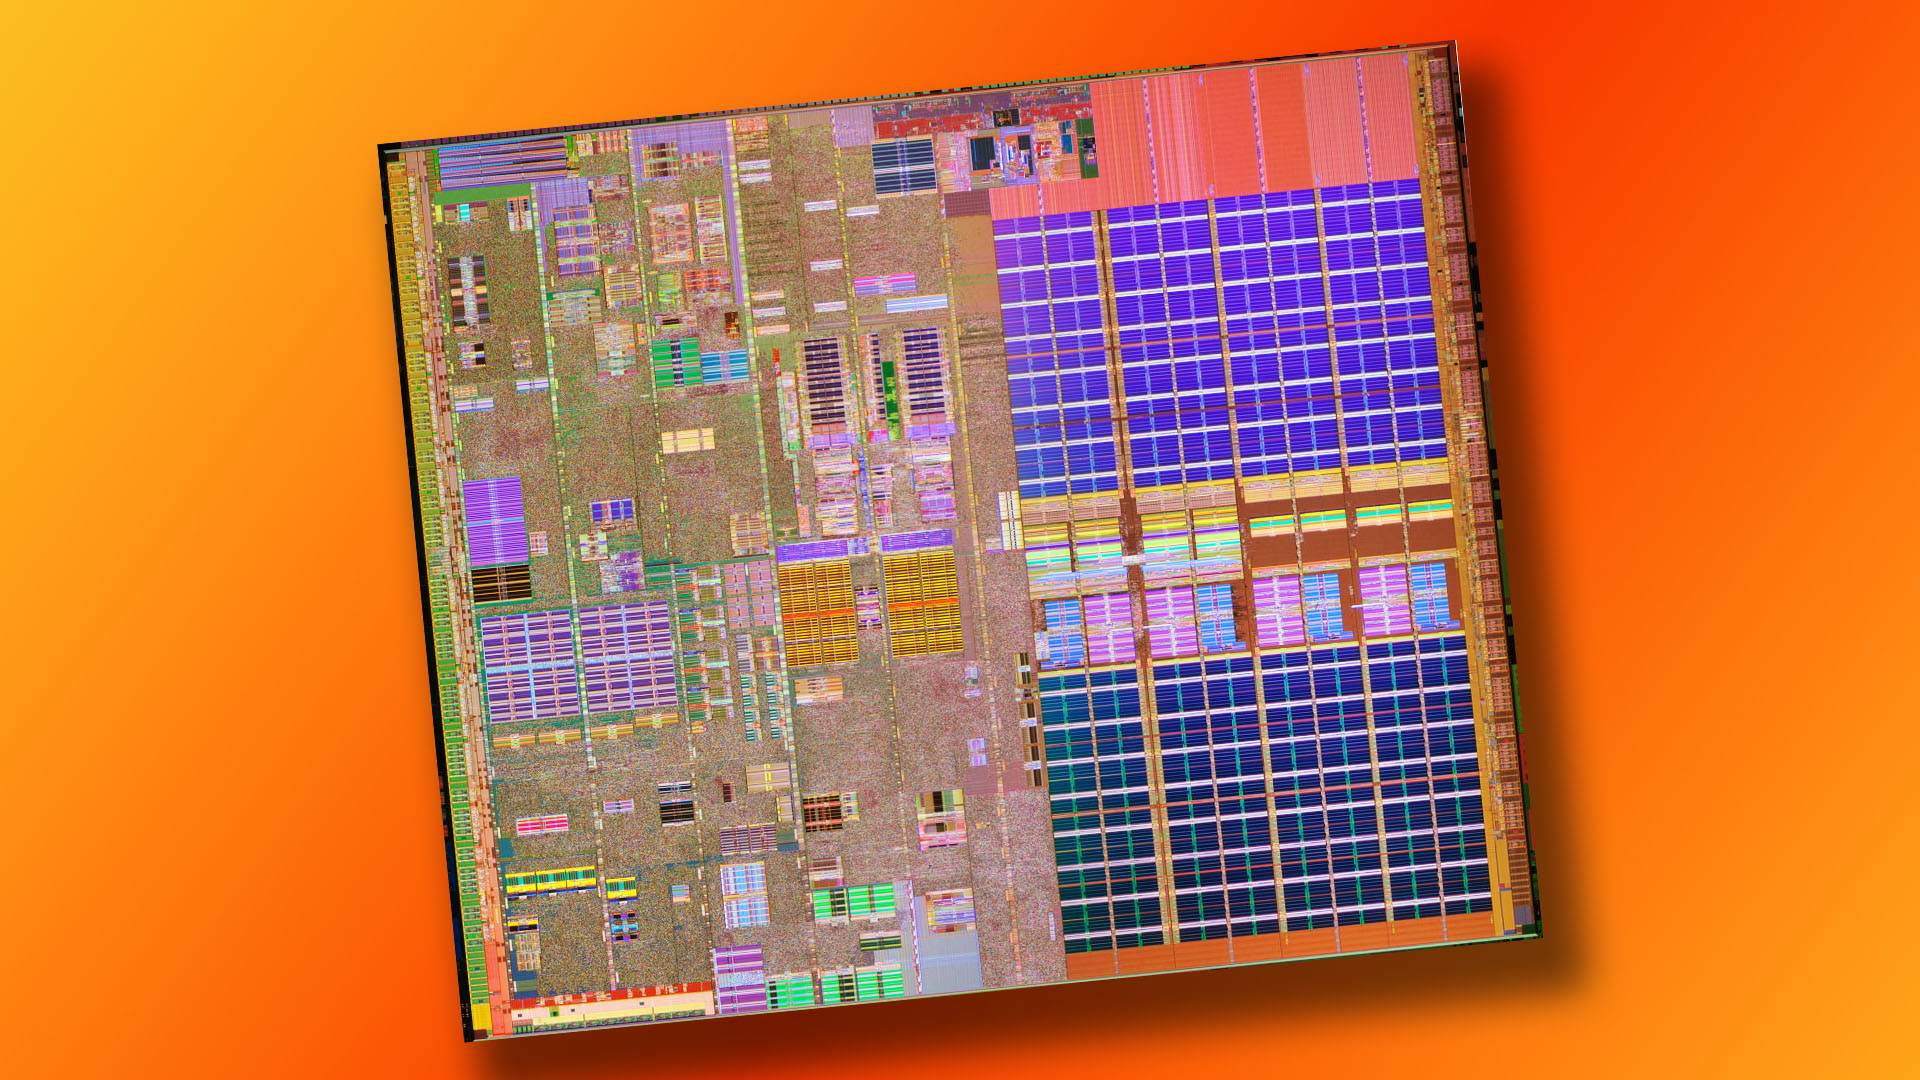 Intel Pentium 4: Prescott die shot with 31-stage pipeline